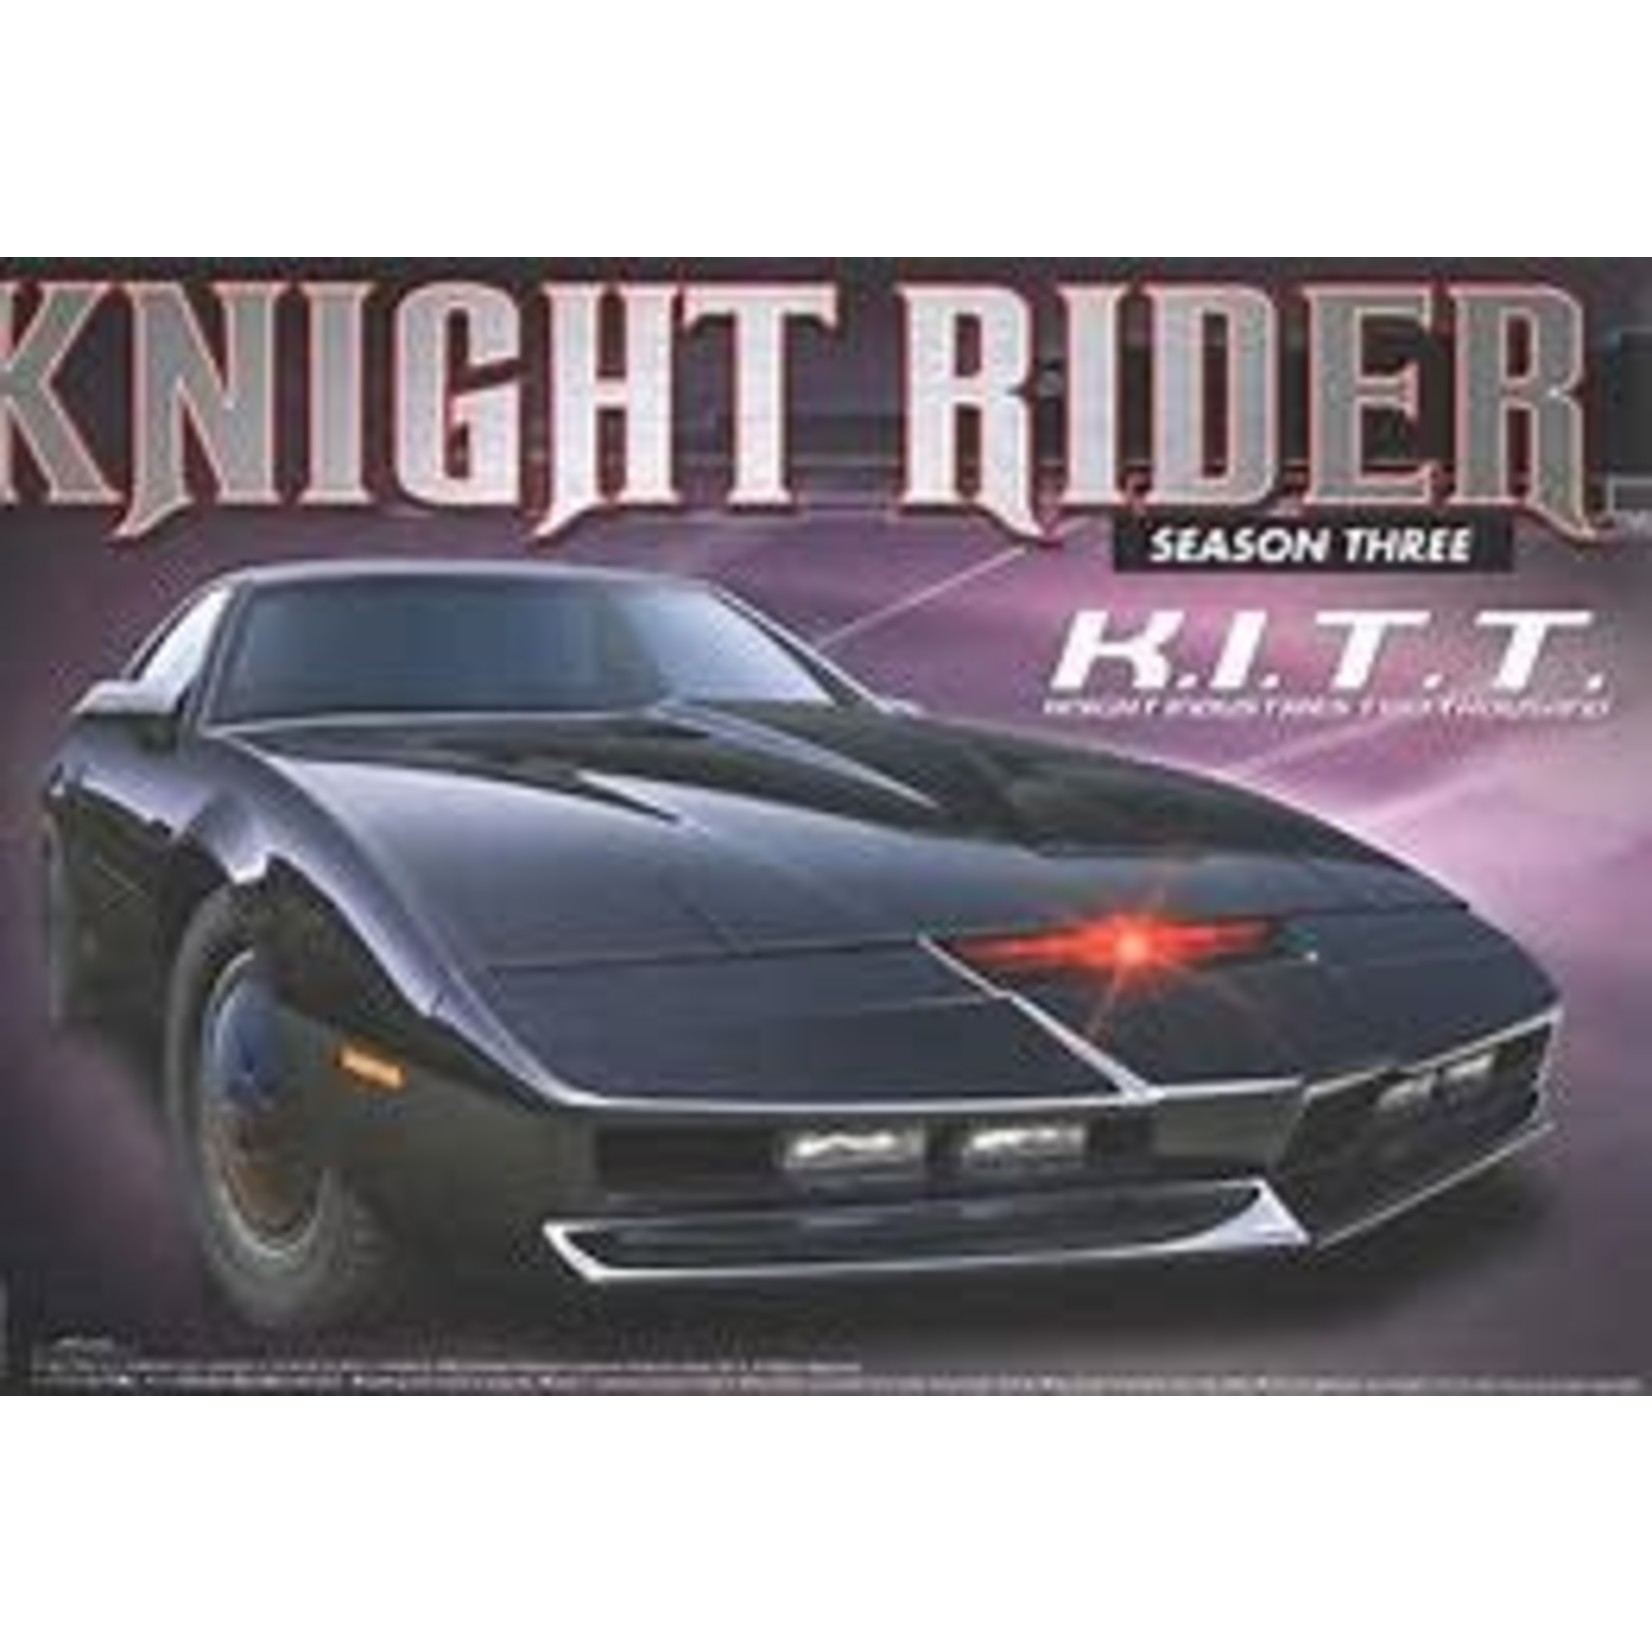 Aoshima Knight Rider Season 3 - K.I.T.T